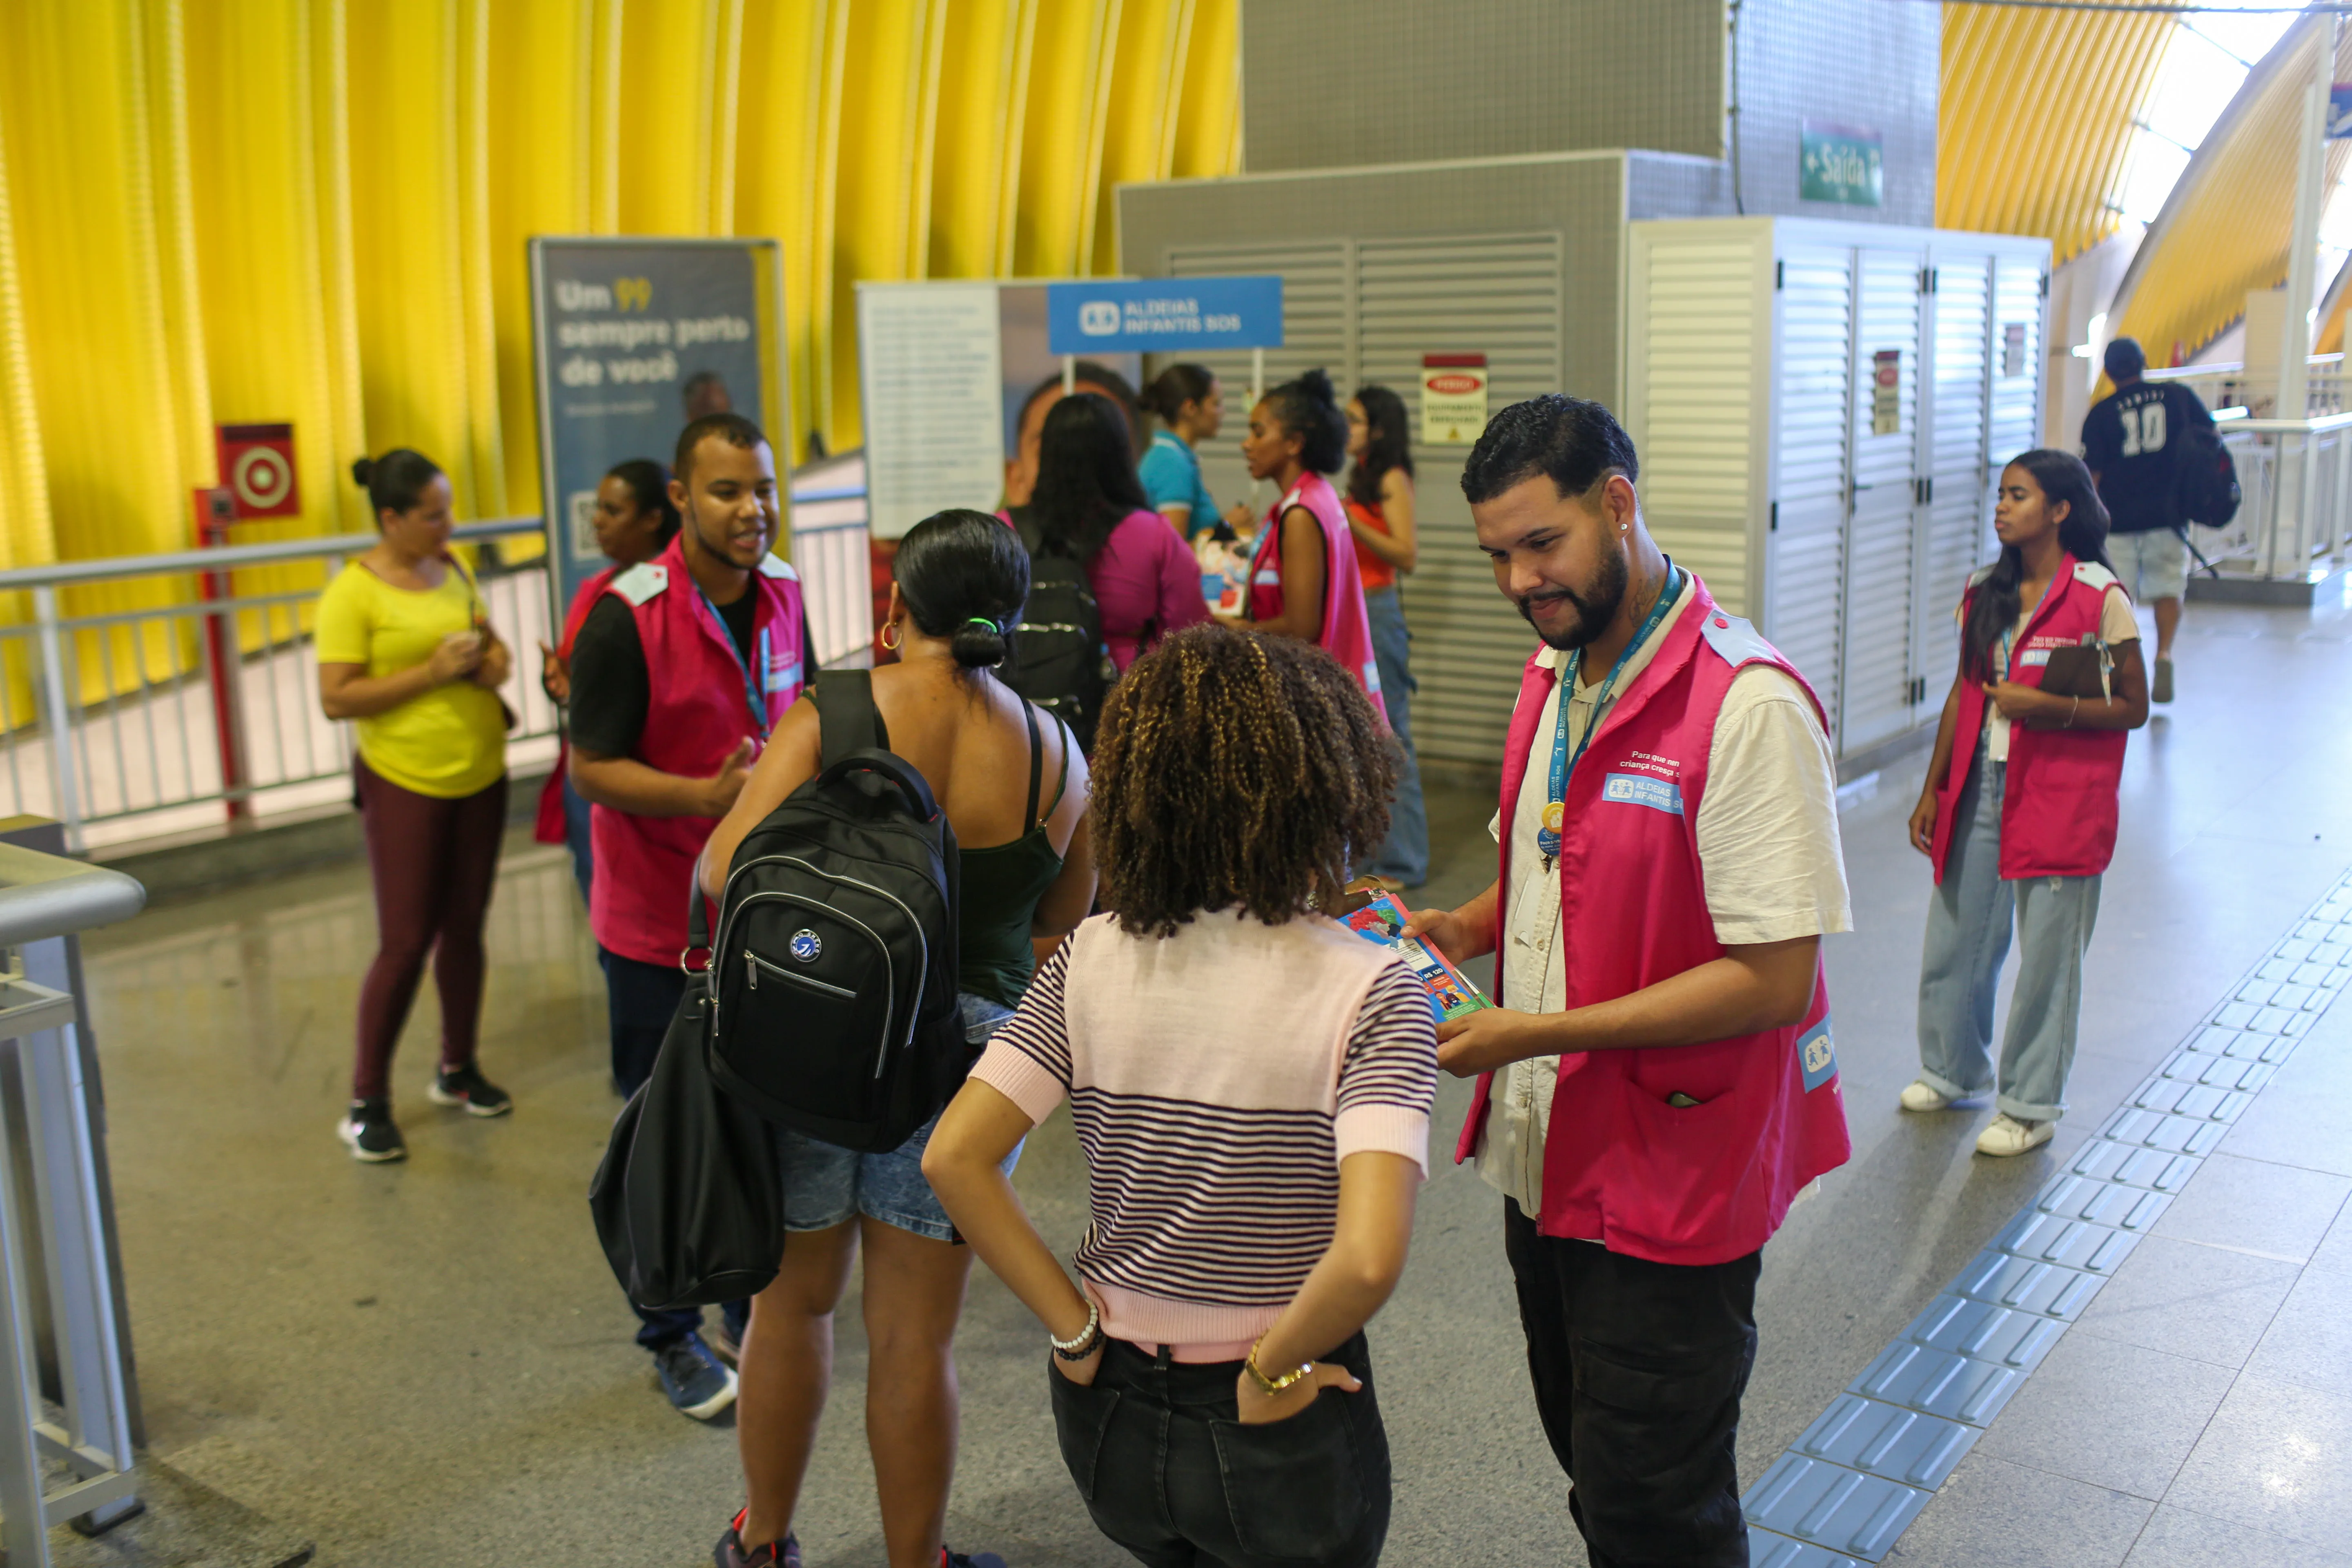 A organização Aldeias Infantis SOS está promove uma campanha de conscientização sobre cuidados com a infância e juventude em estandes montados nas estações de metrô de Salvador